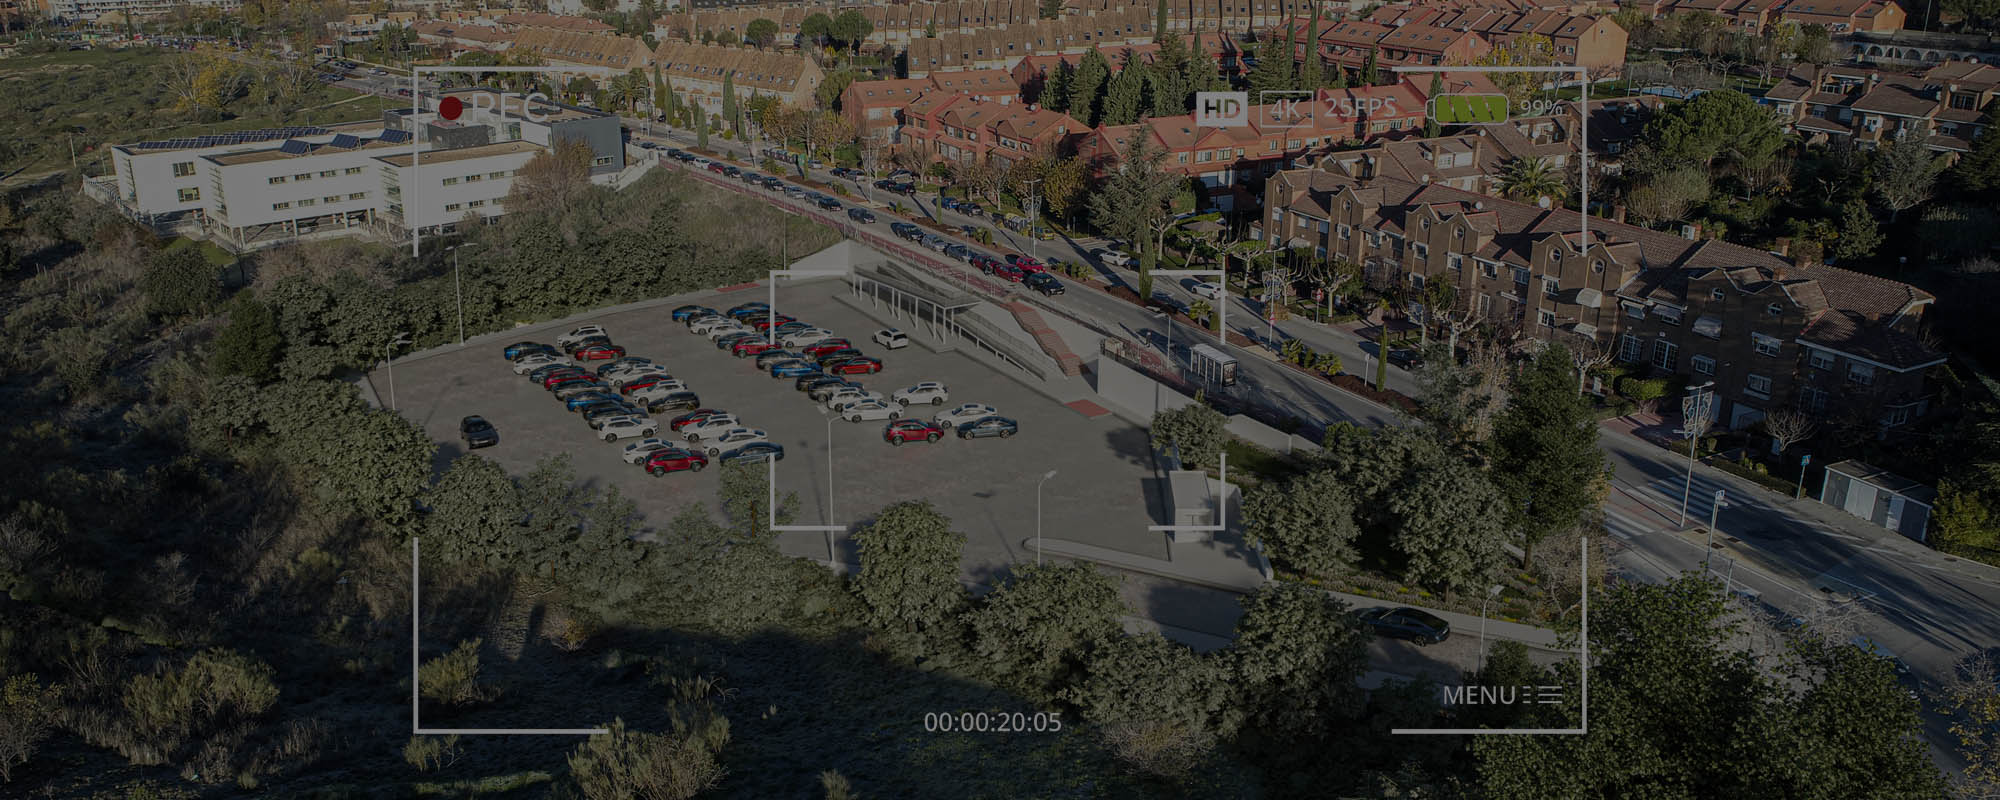 Renders 3D y vídeo de un aparcamiento en Madrid